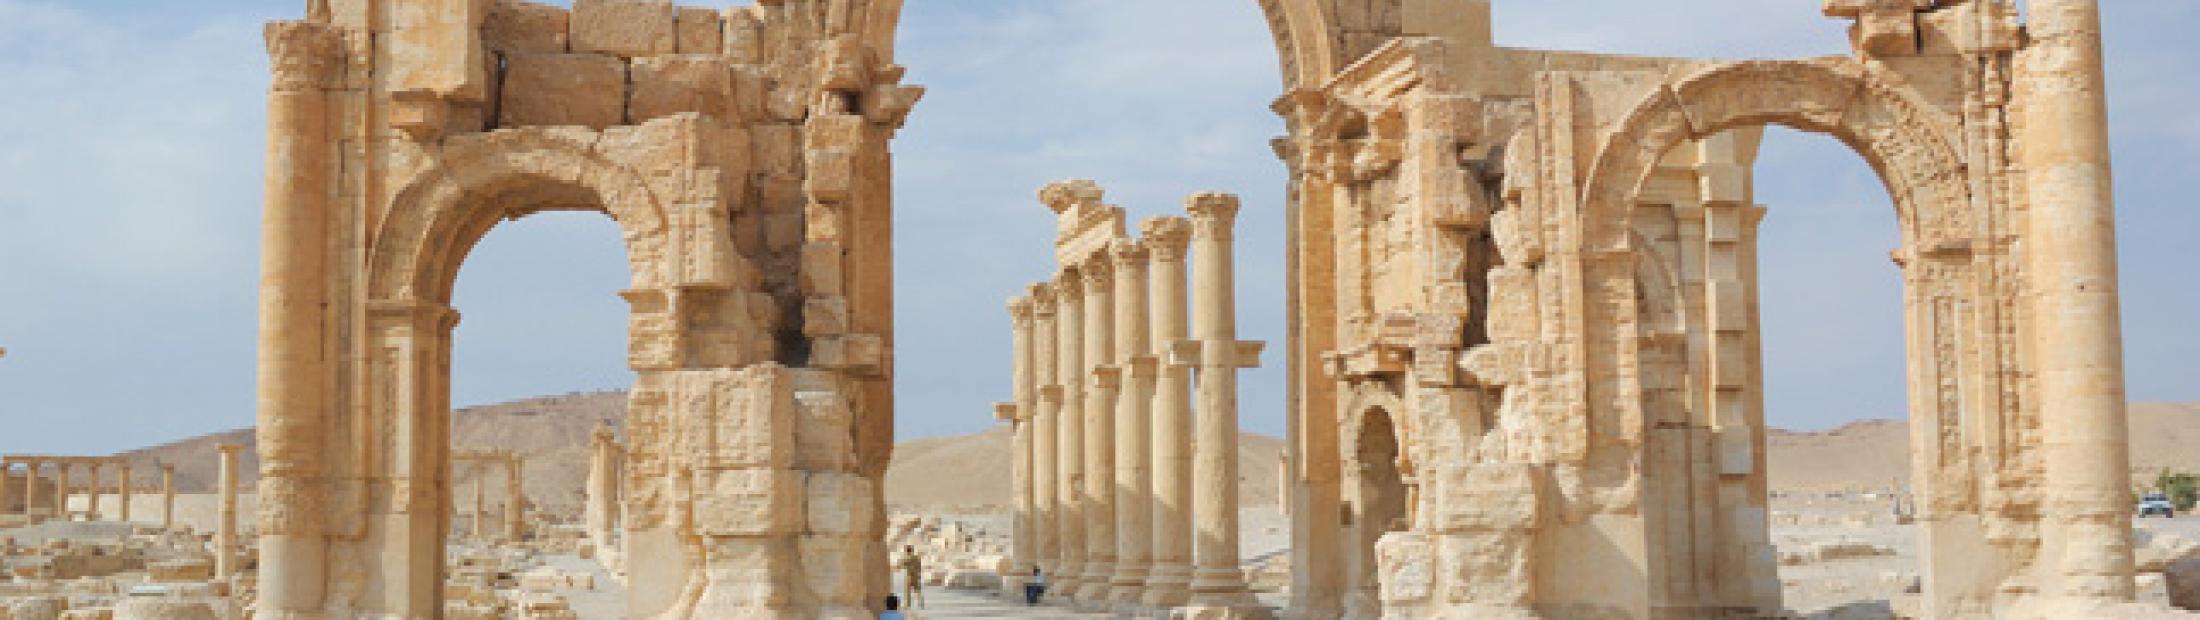 Siria turismo: maravillas en medio del conflicto